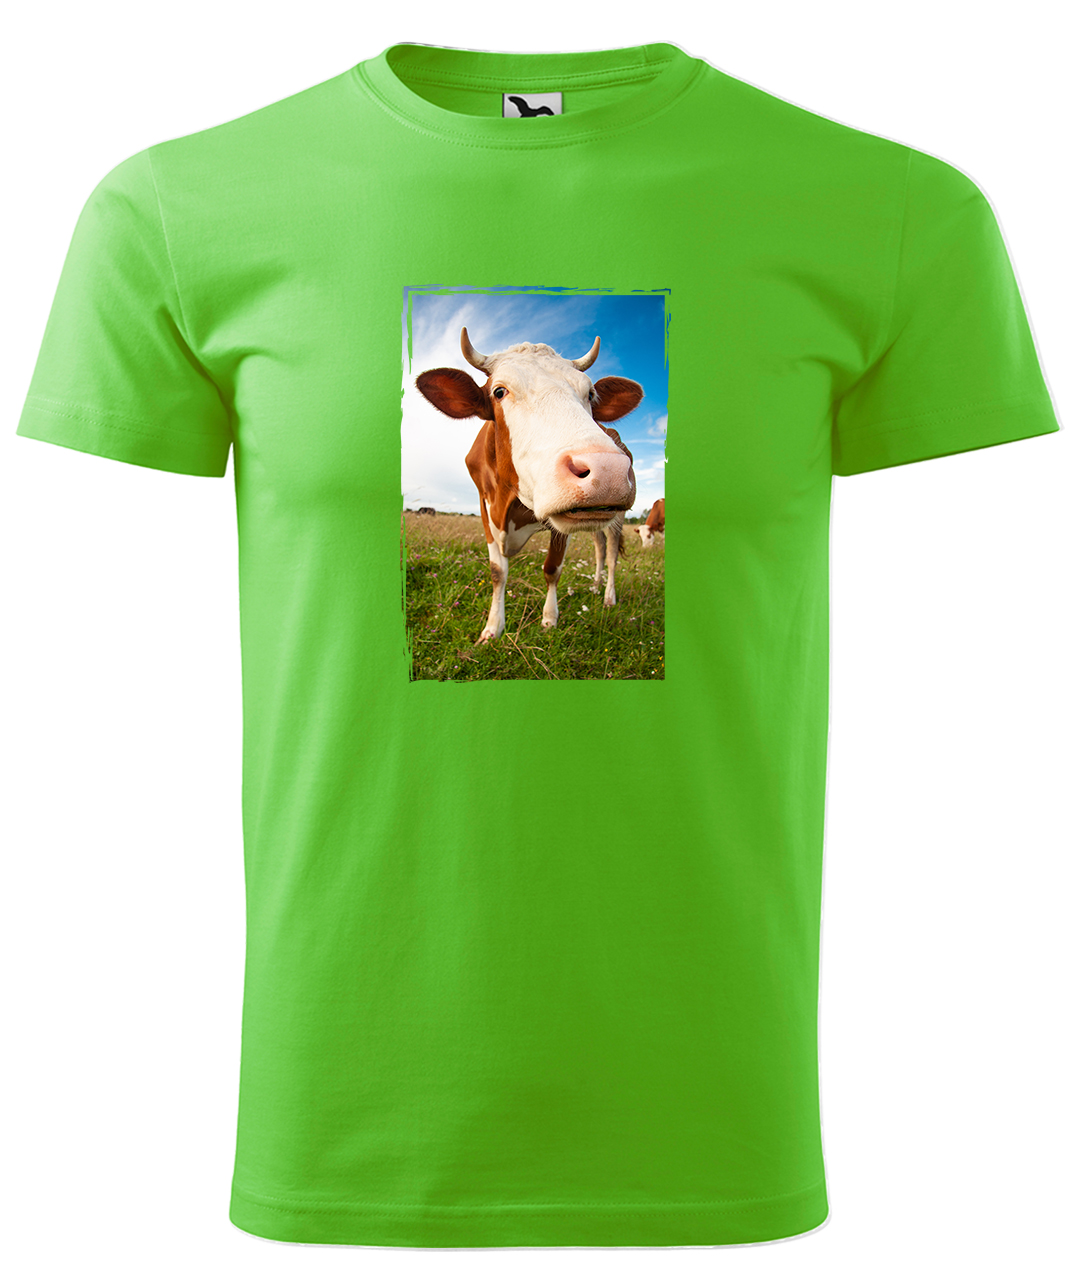 Dětské tričko s krávou - Na pastvě Velikost: 8 let / 134 cm, Barva: Apple Green (92), Délka rukávu: Krátký rukáv